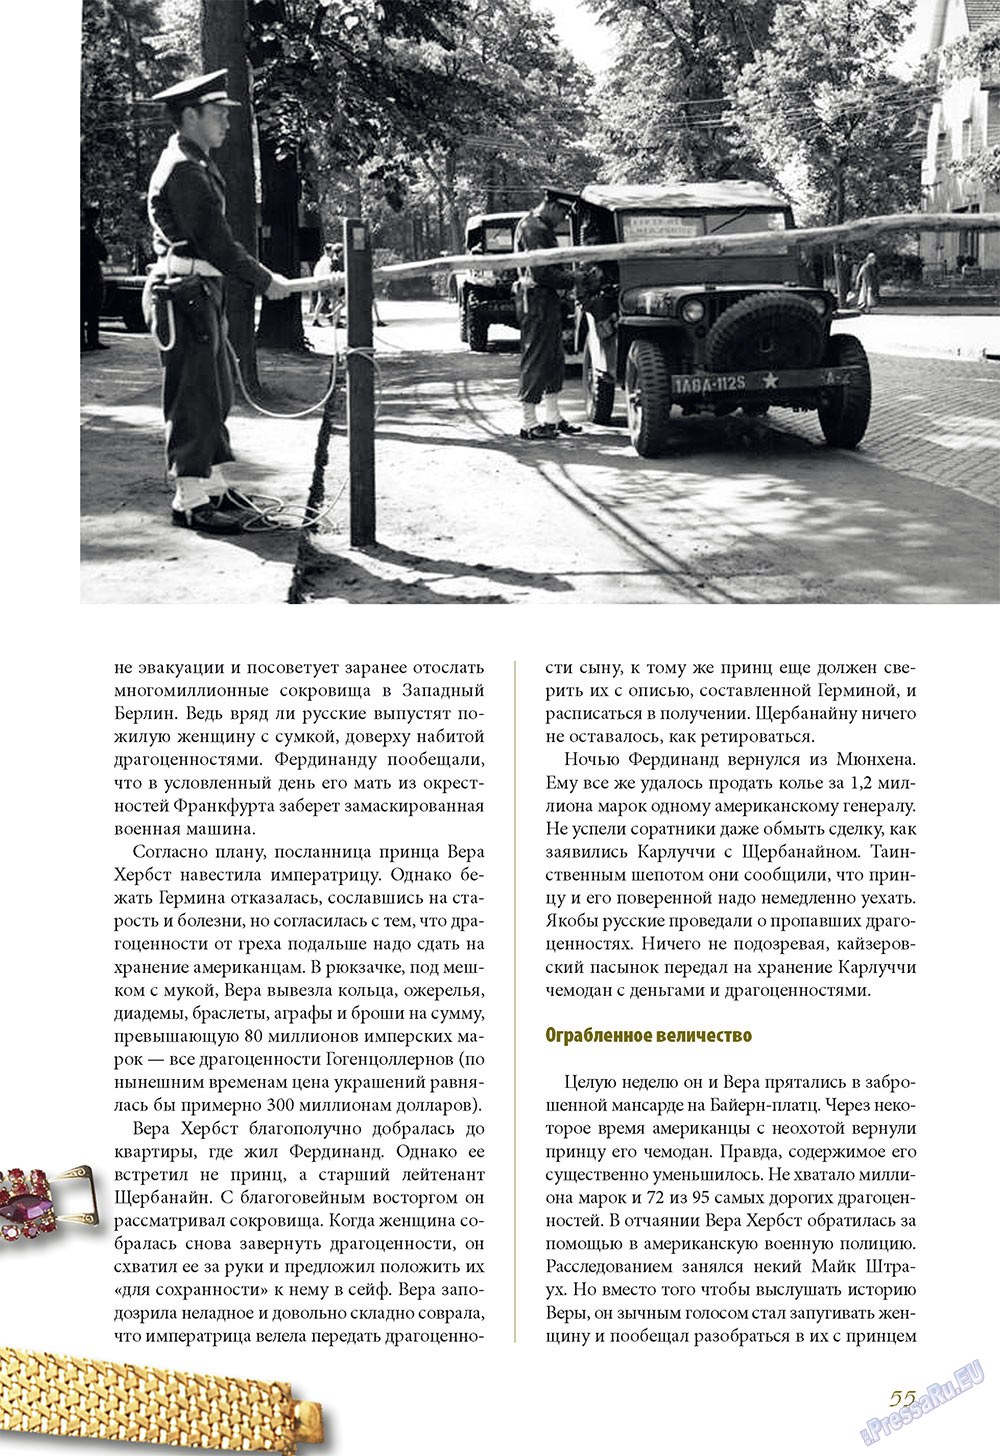 Le Voyageur (журнал). 2010 год, номер 13, стр. 57